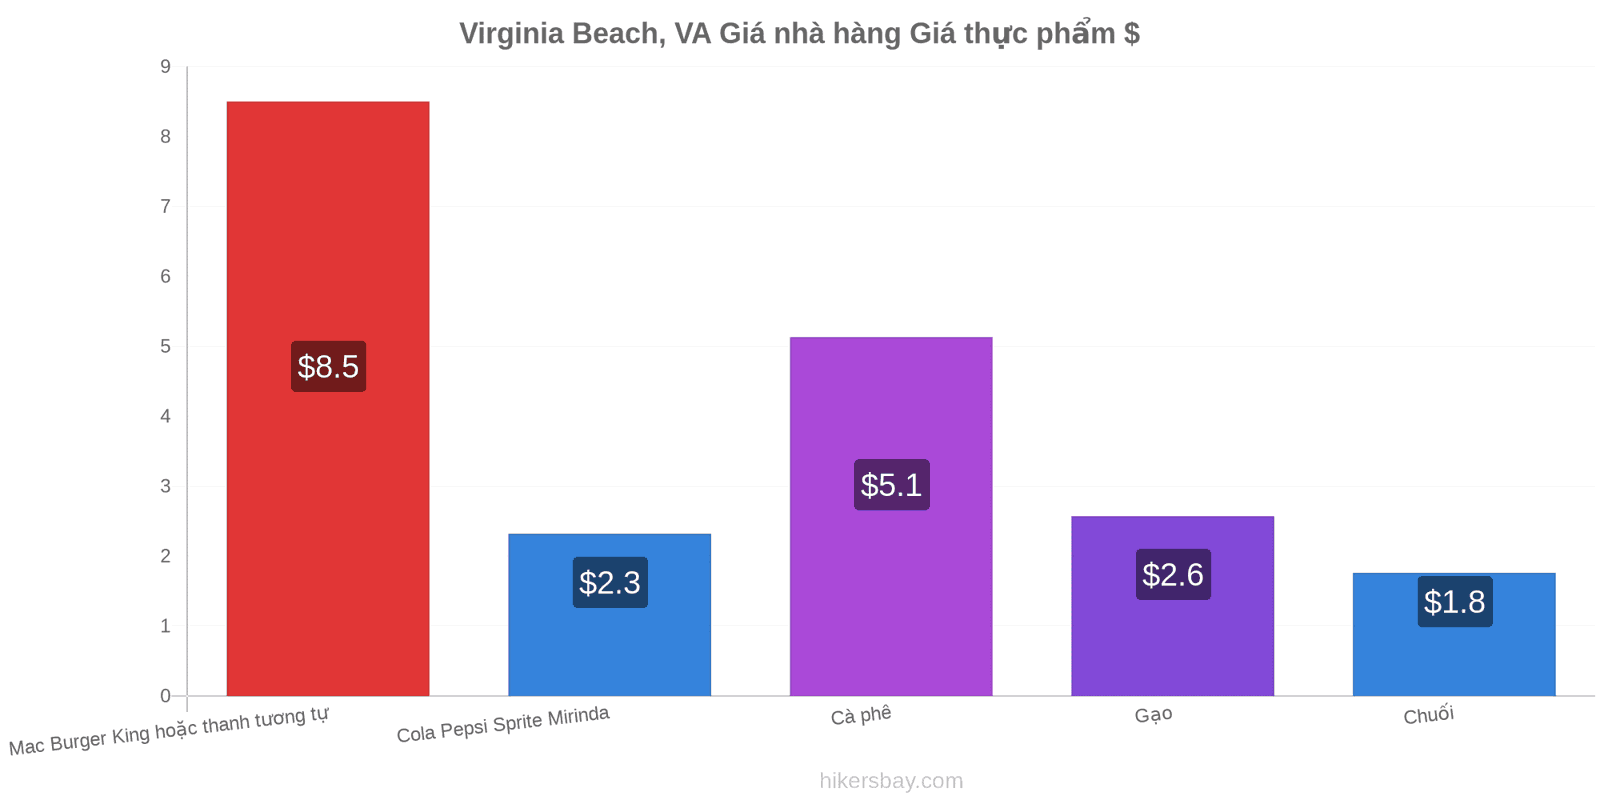 Virginia Beach, VA thay đổi giá cả hikersbay.com